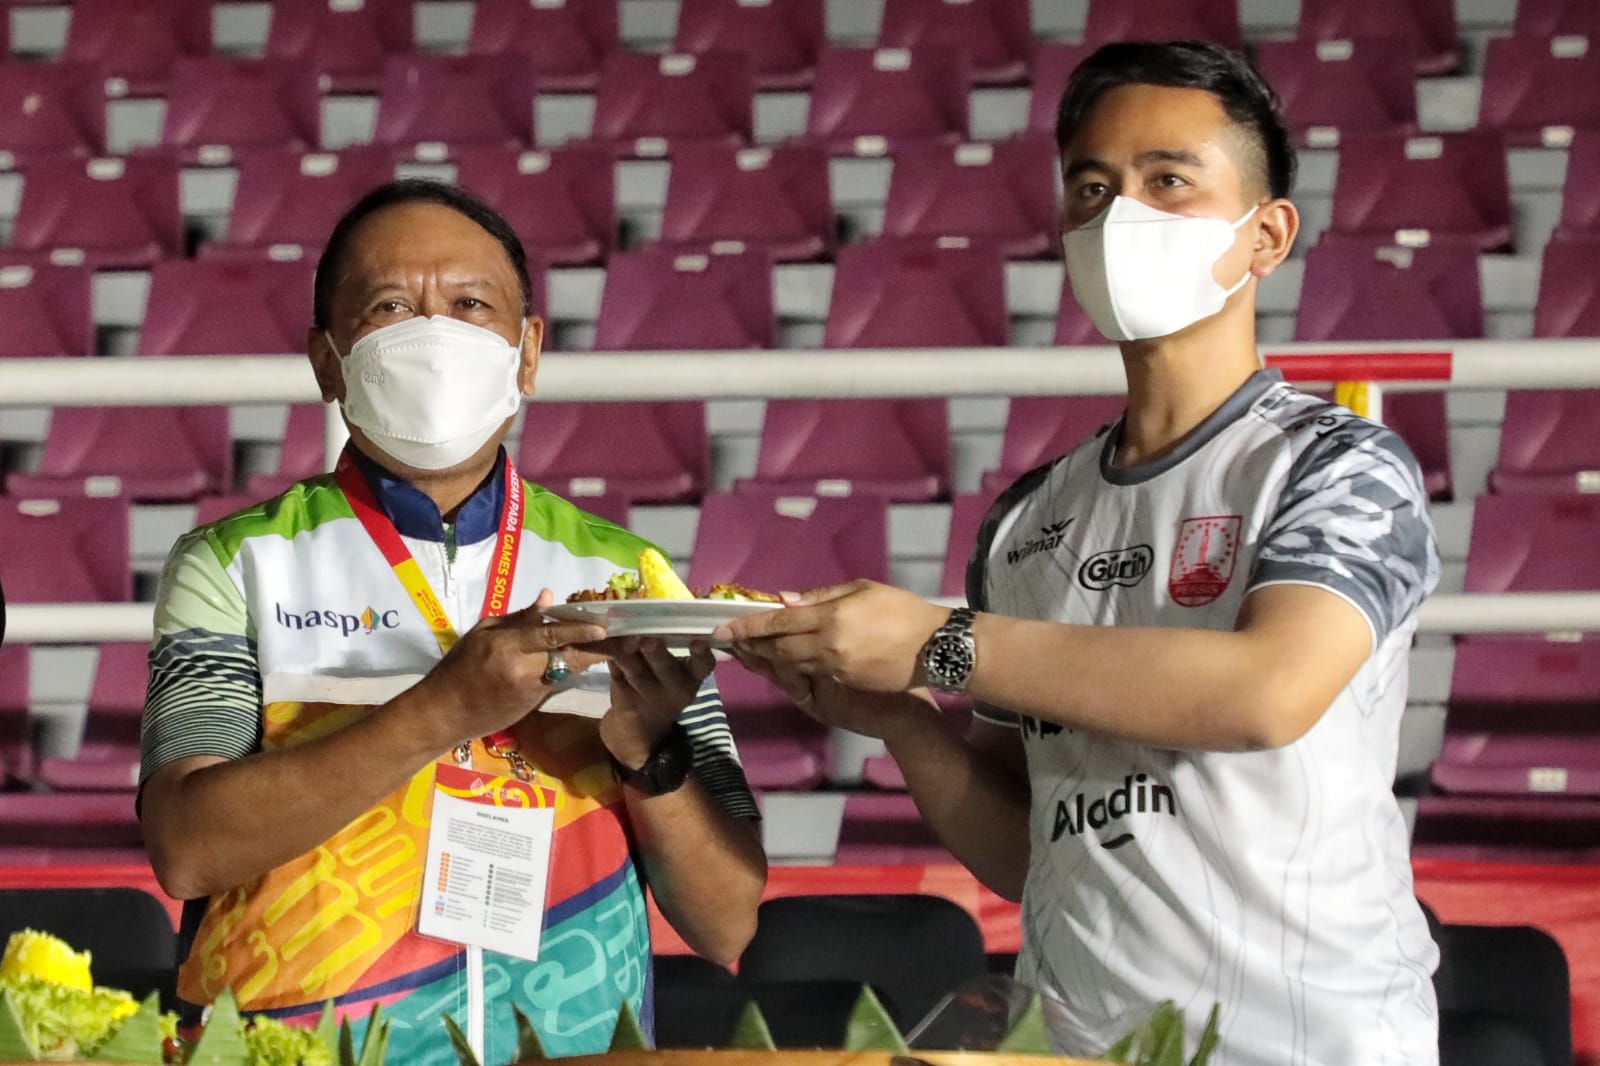 Menpora Amali dan Ketua INASPOC Tumpengan Bersama Para Pengisi Acara, Volunteer dan Tenaga Pendukung Asean Para Games Solo 2022